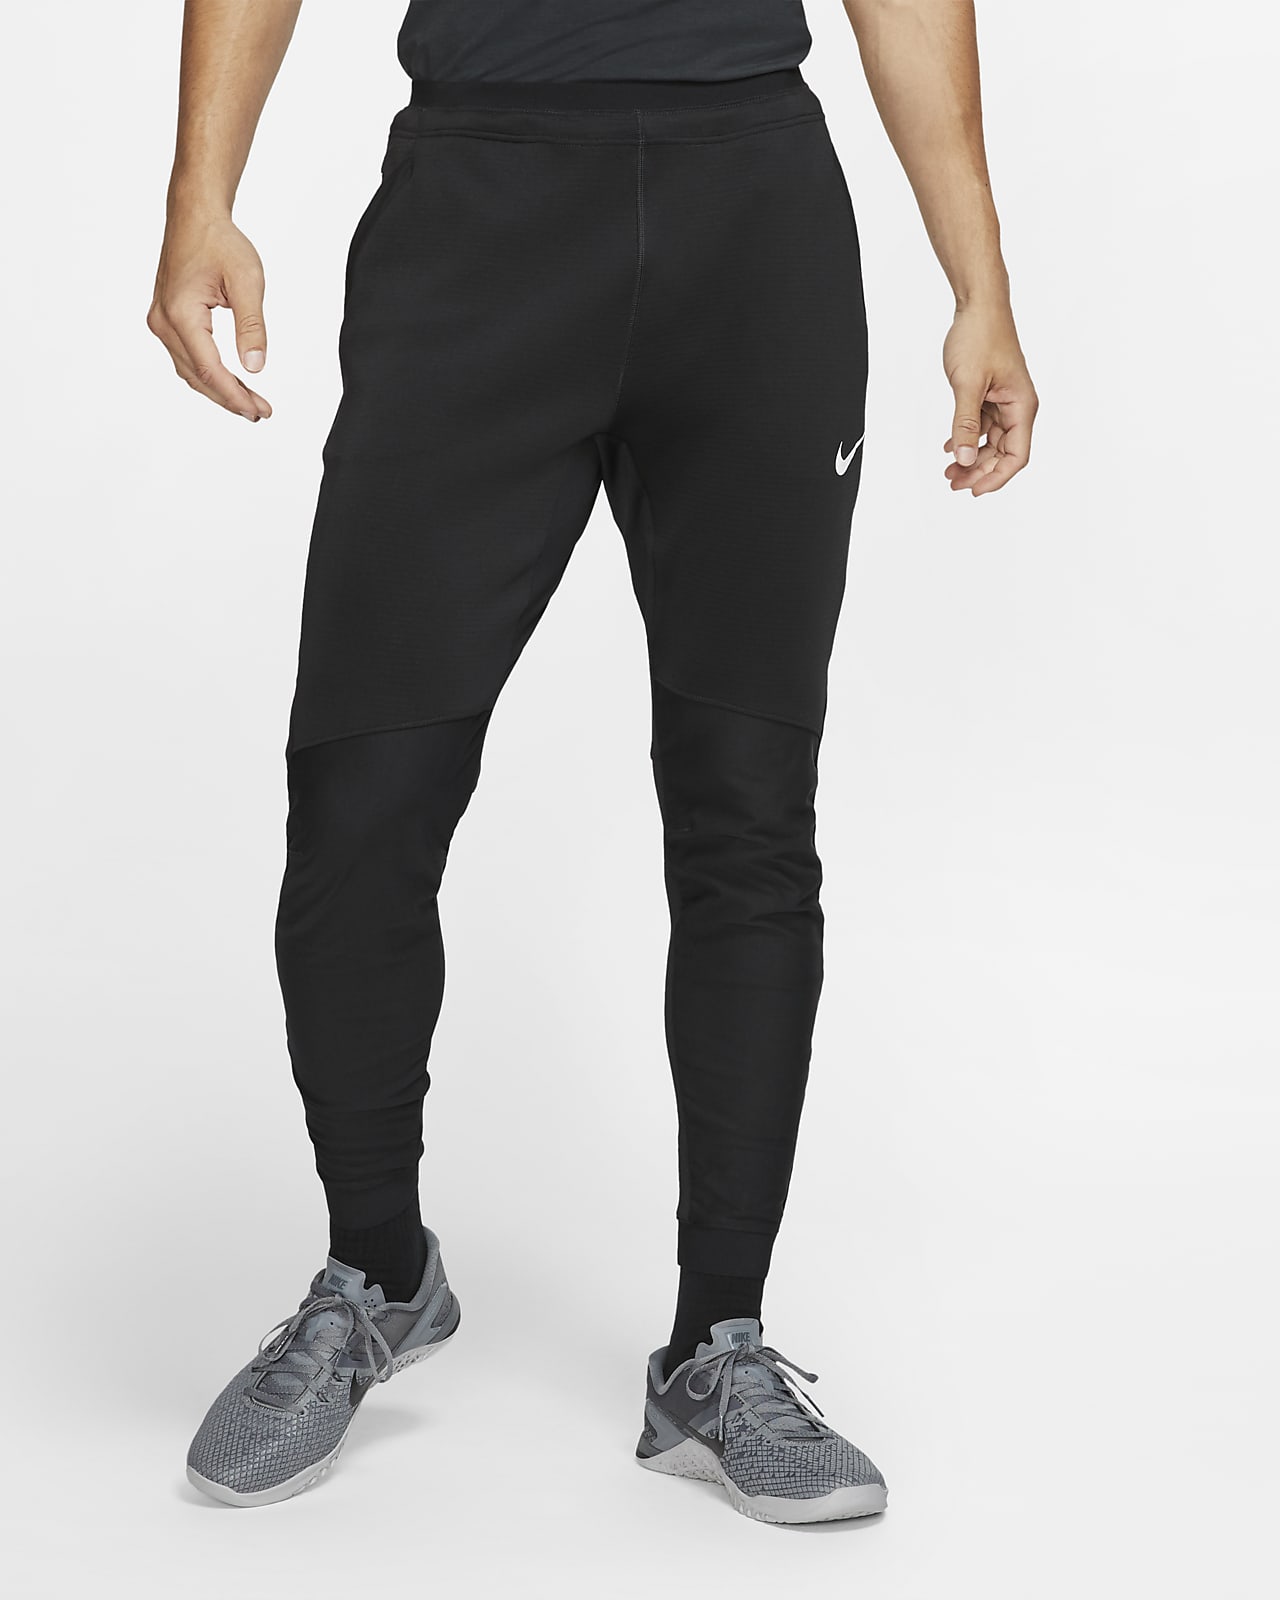 Pantalones para hombre Nike Pro. Nike MX